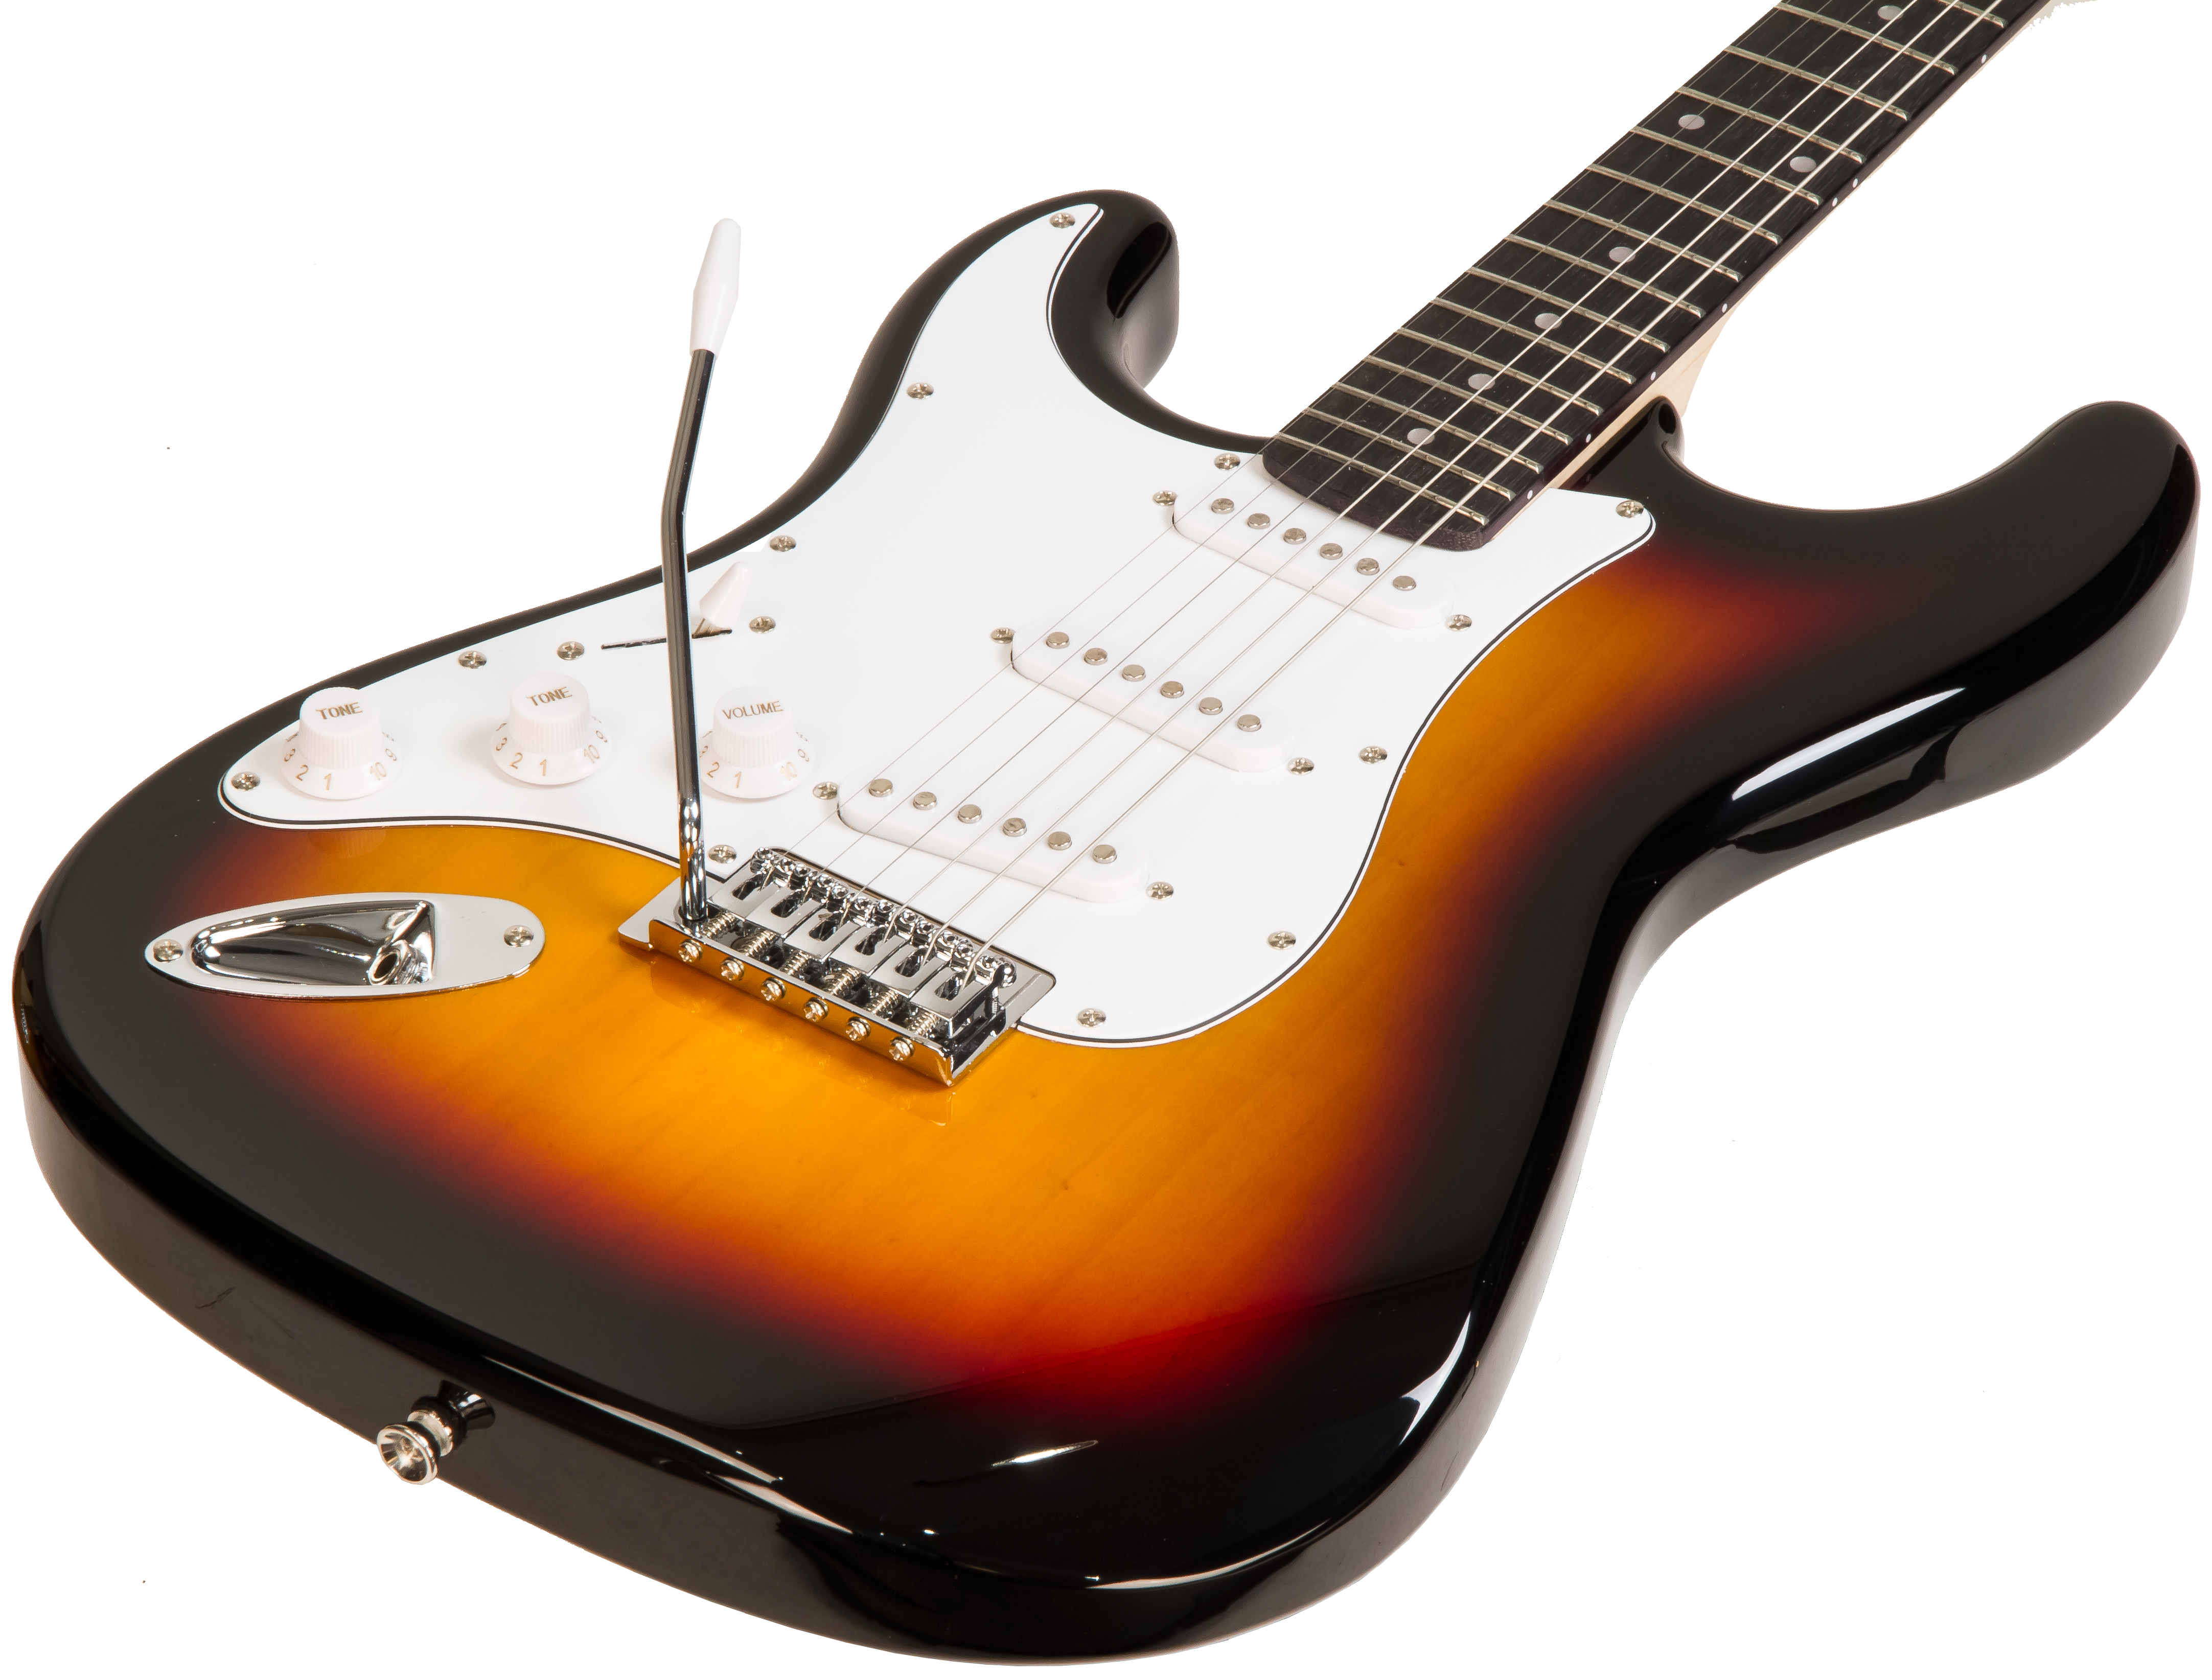 Eastone Str70t 3ts Lh Gaucher Sss Trem Pur - Sunburst - Left-handed electric guitar - Variation 1